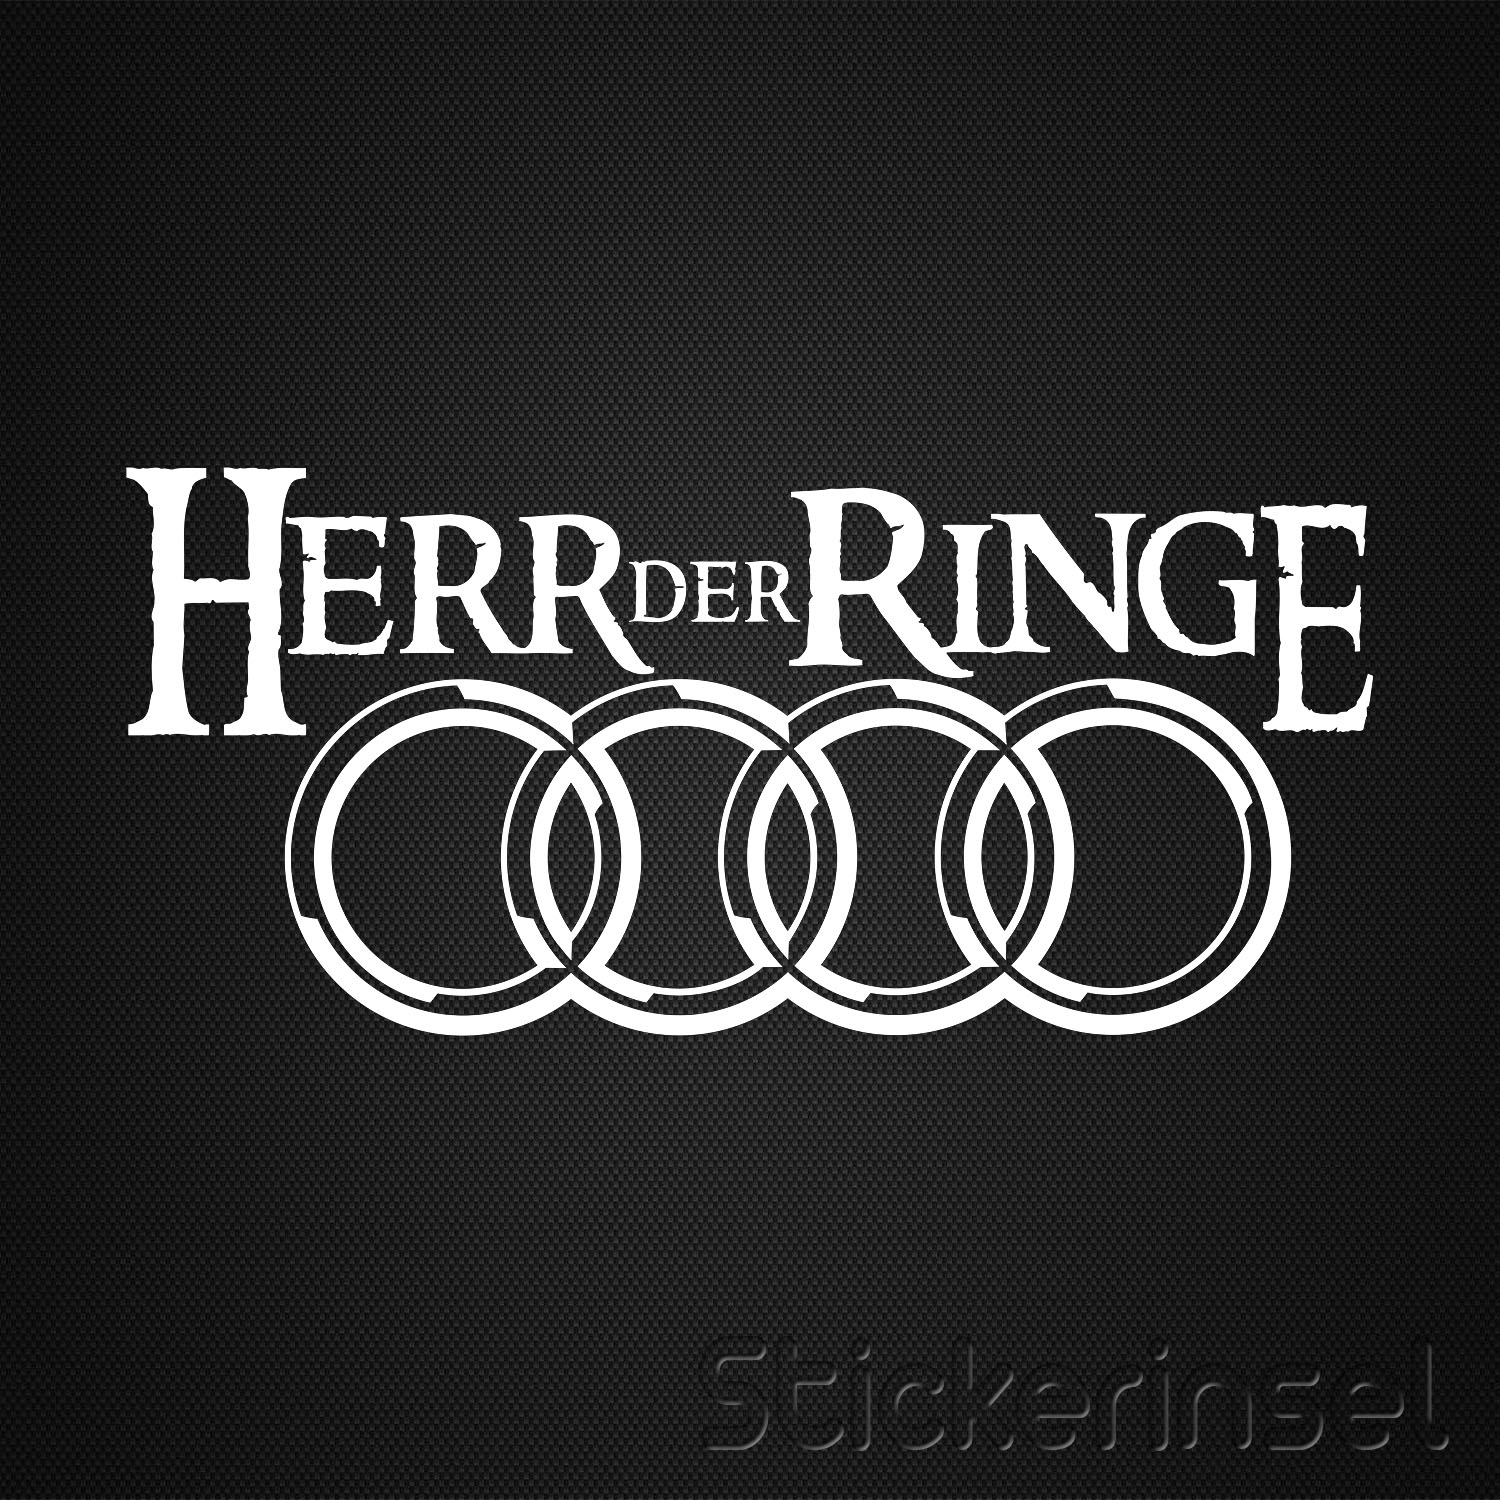 https://www.stickerinsel.at/wp-content/uploads/2016/09/Stickerinsel_Herr-der-Ringe.jpg